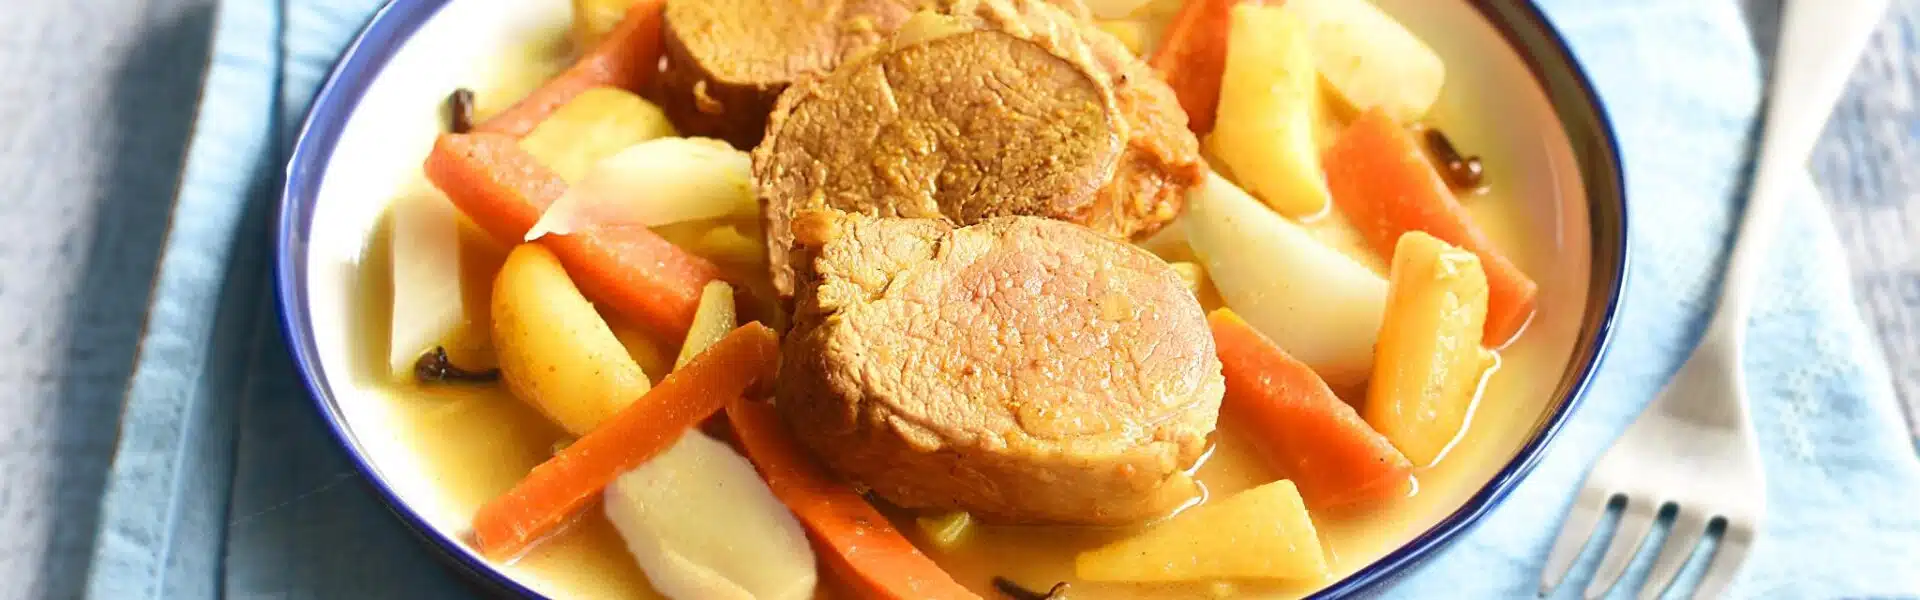 Filet mignon de porc aux légumes confits - 3052